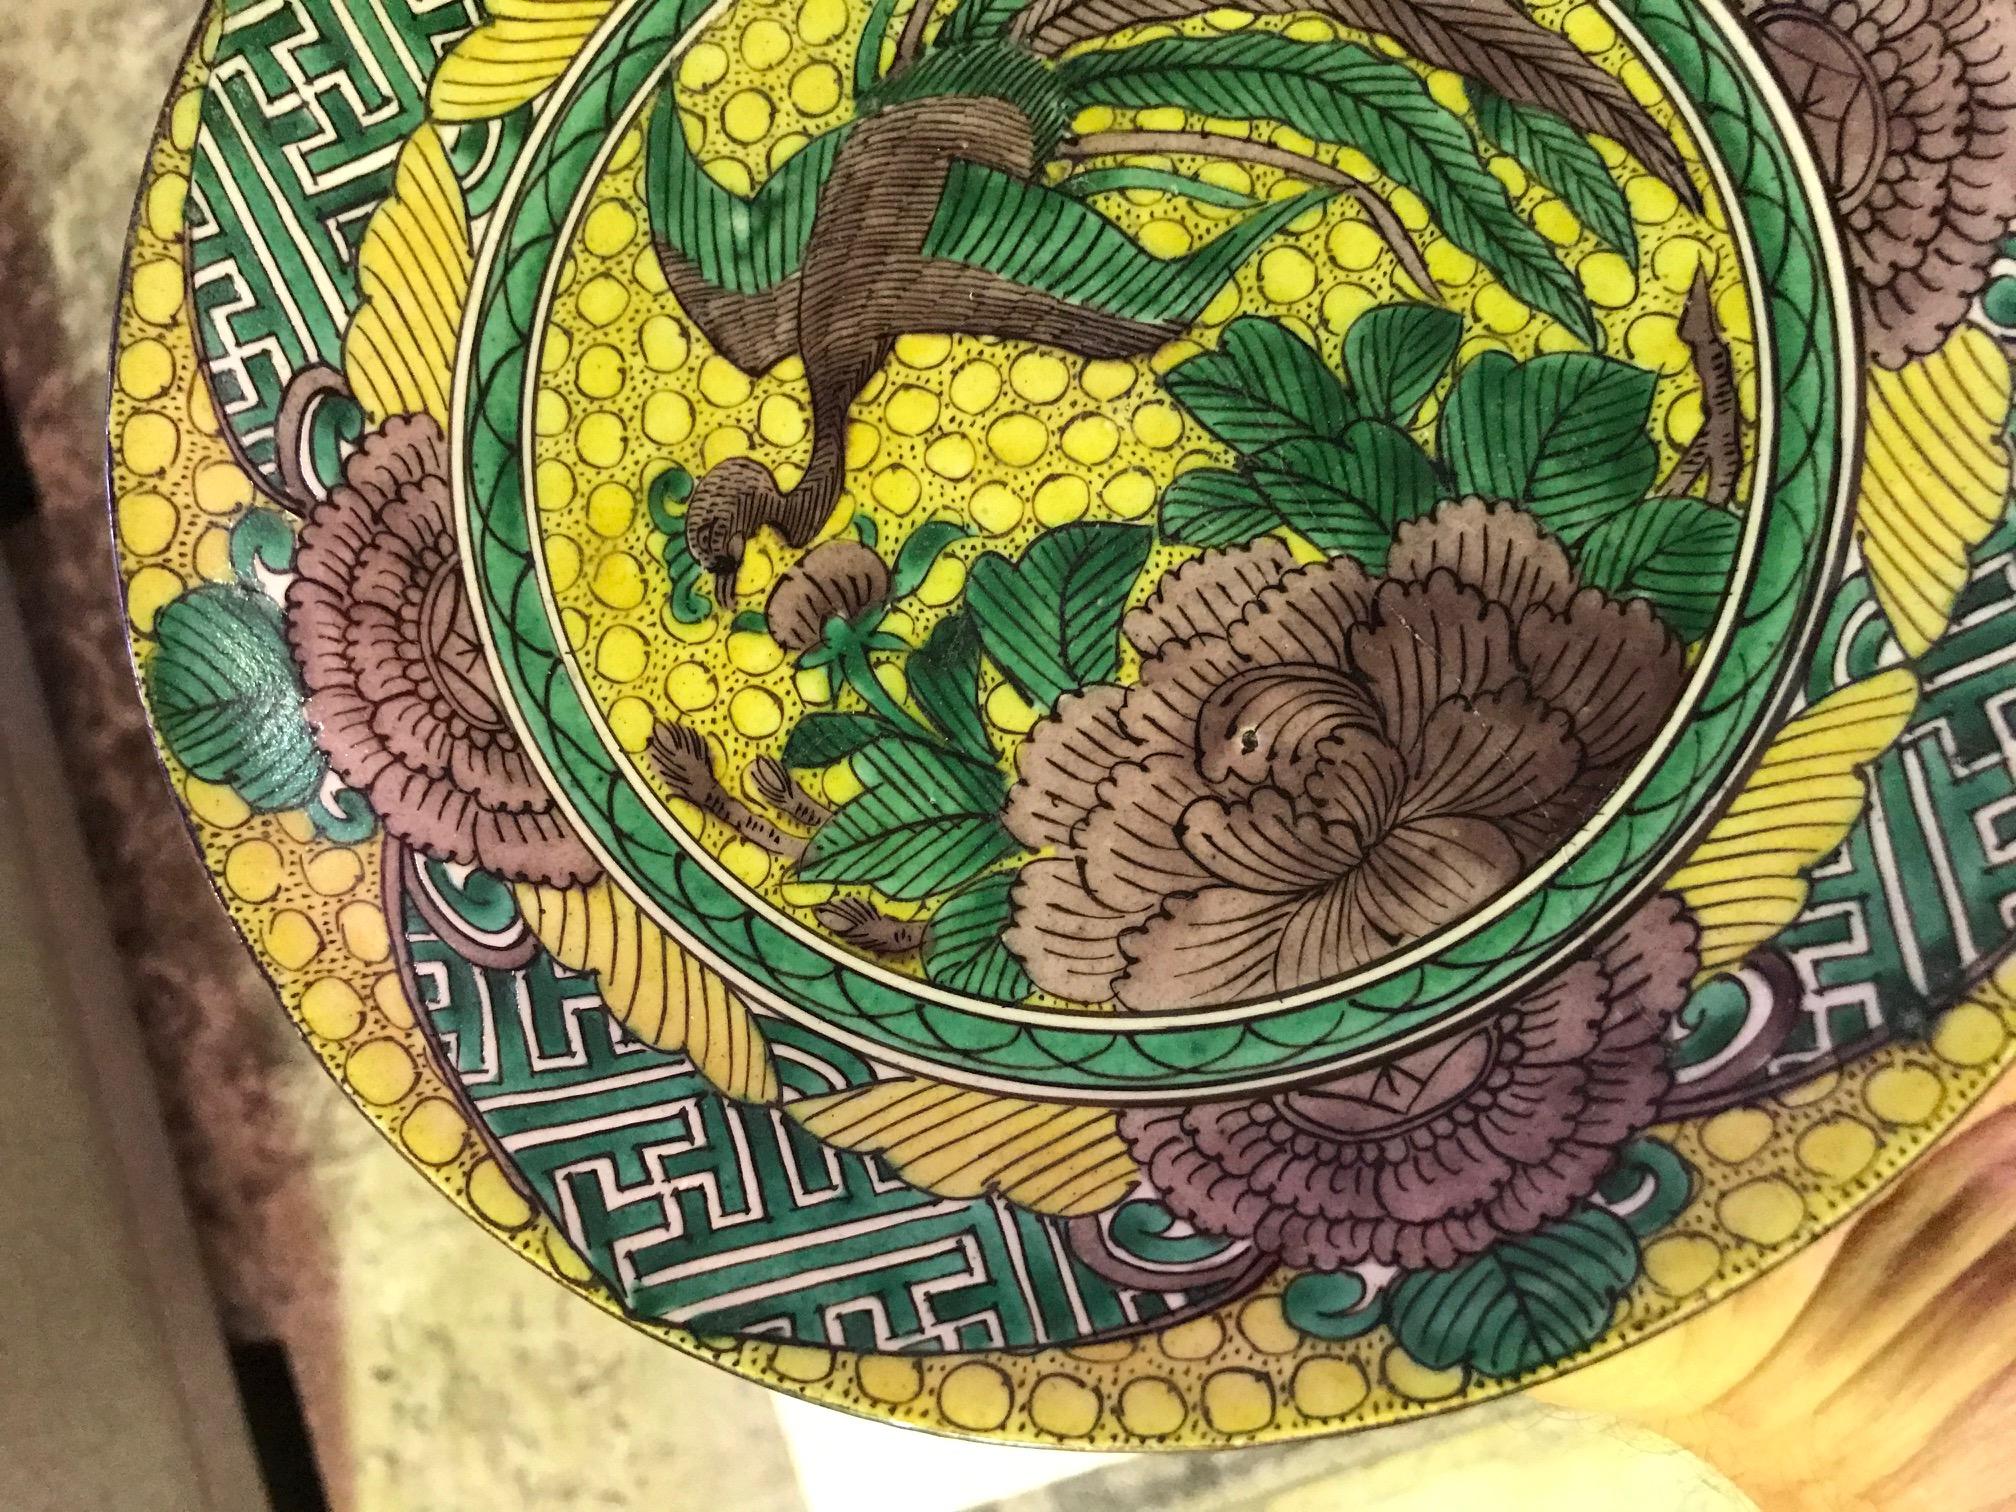 Ein wunderschön dekorierter, handbemalter japanischer Teller. 

Aus einer Sammlung japanischer Kunst, Töpferwaren und Artefakte.

Auf dem Sockel signiert oder gestempelt.

Abmessungen: 1.5